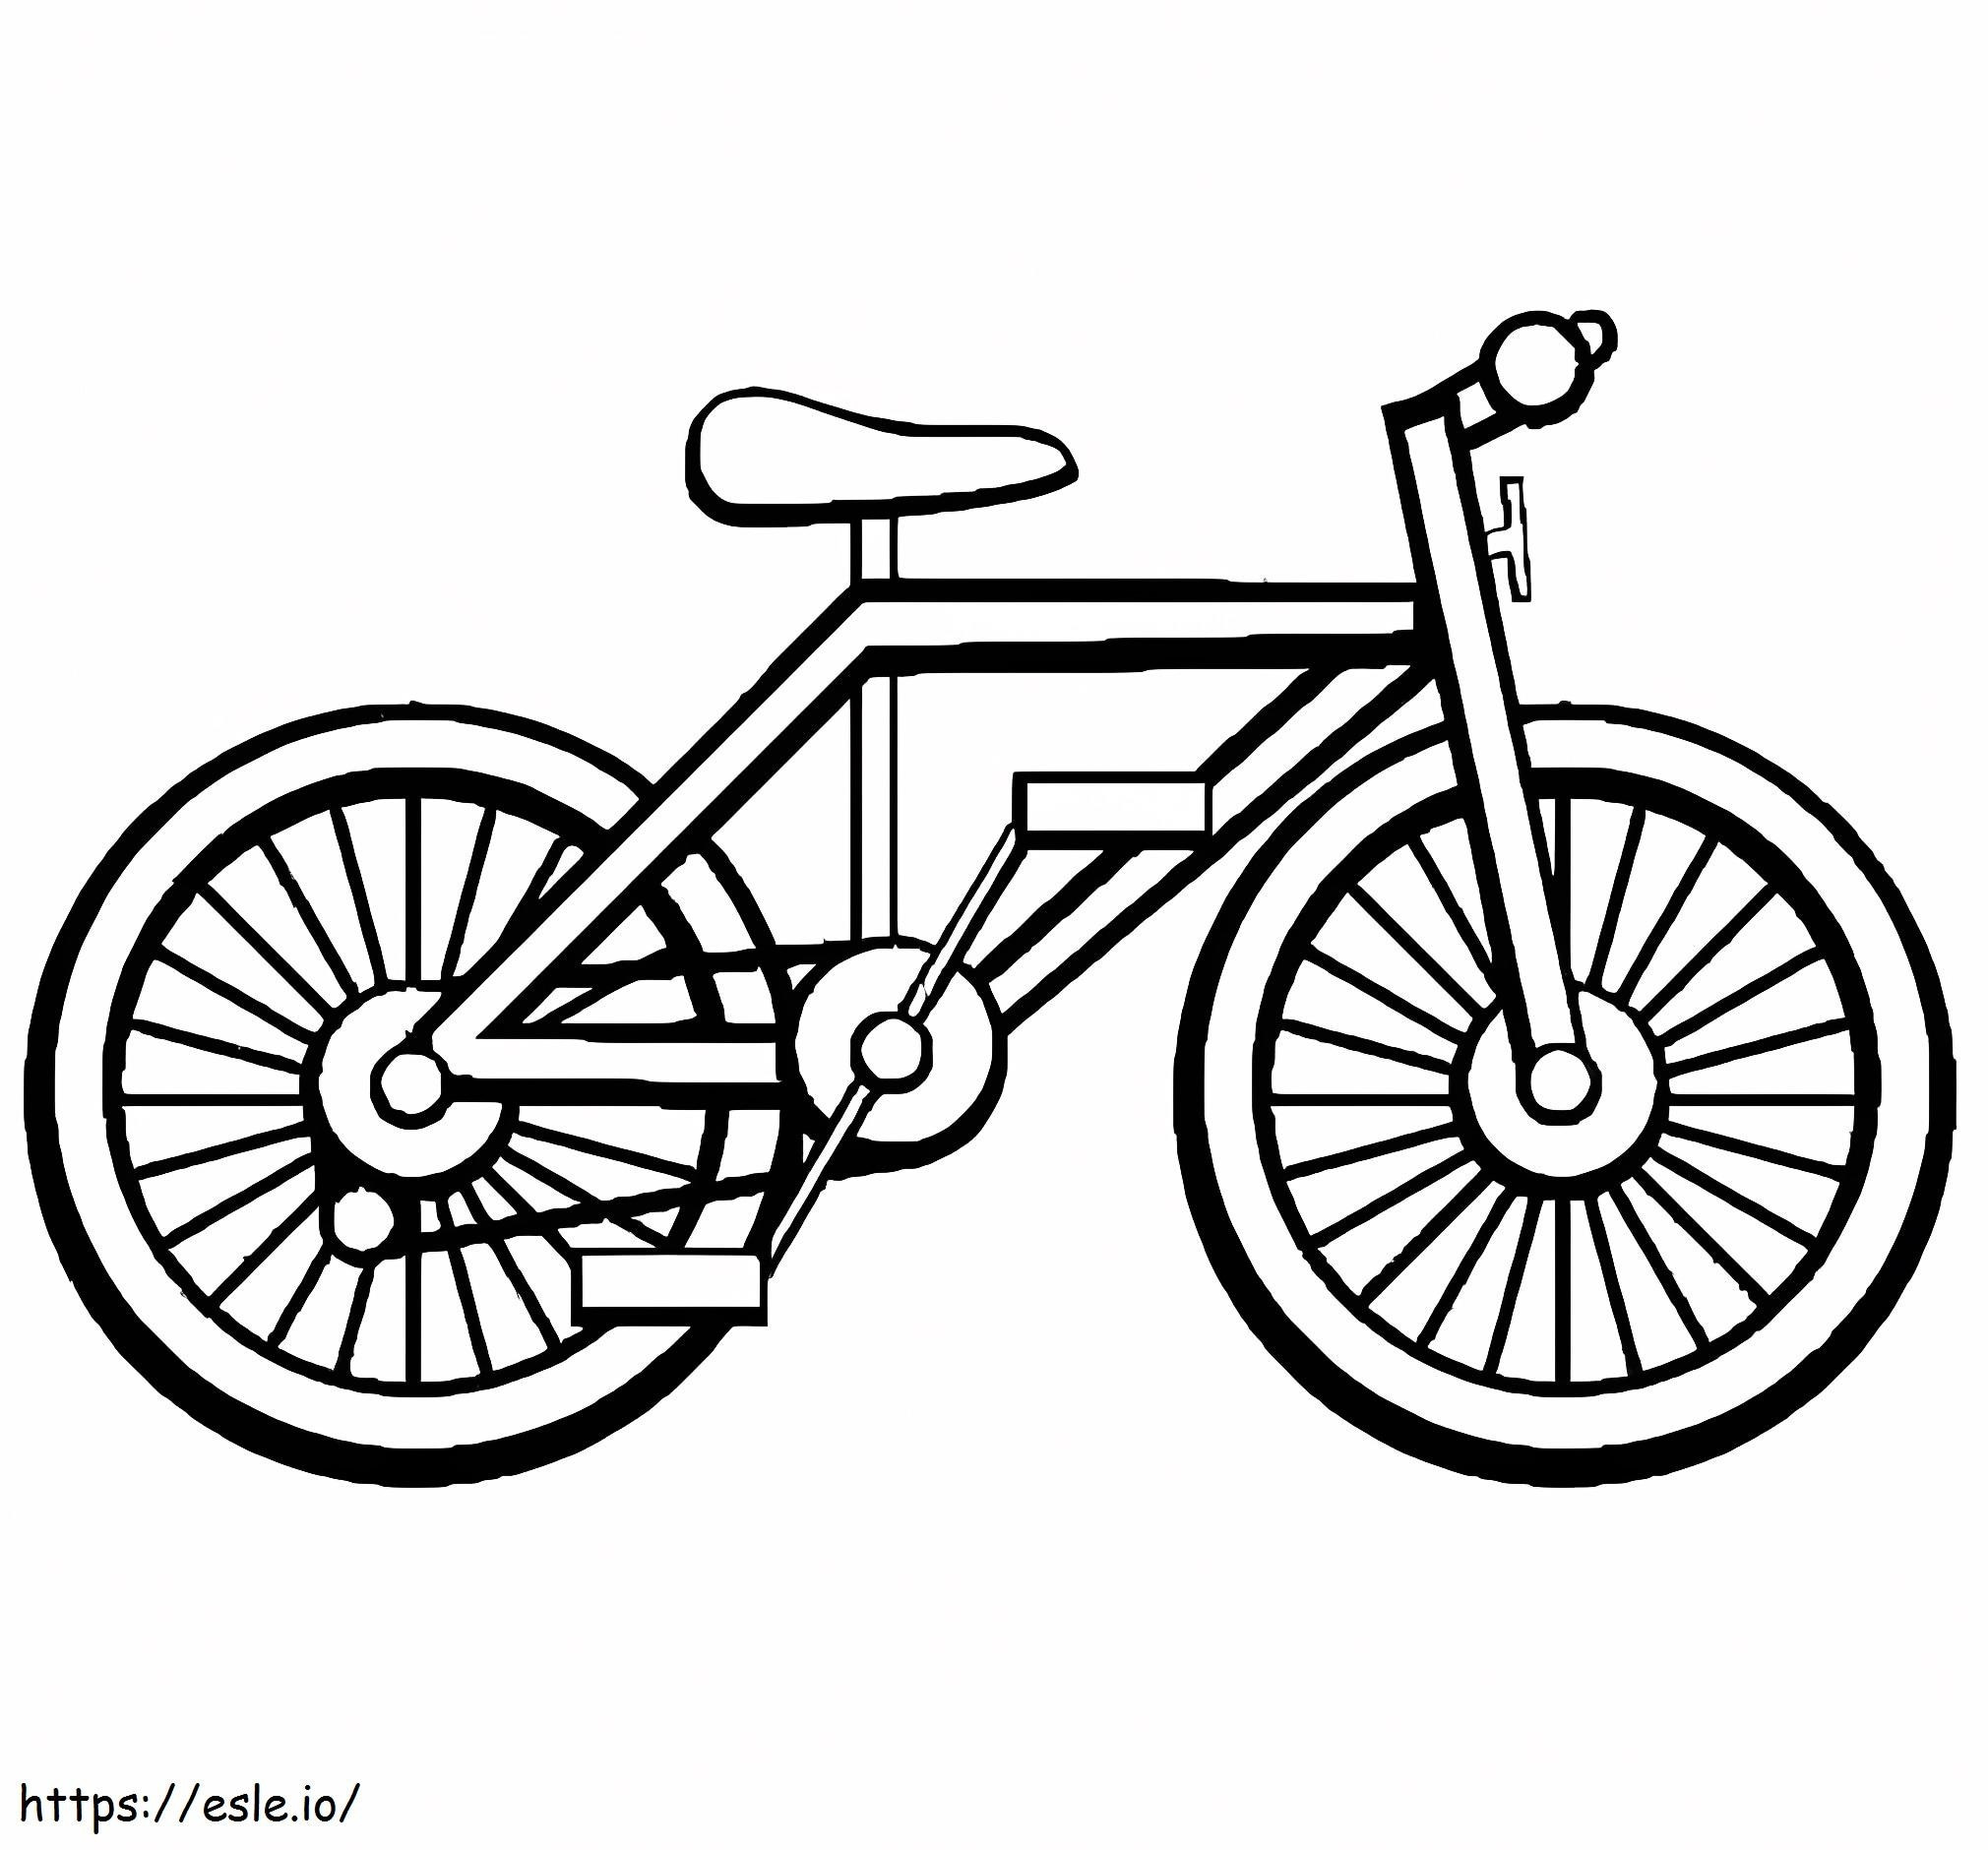 Coloriage Un vélo à imprimer dessin